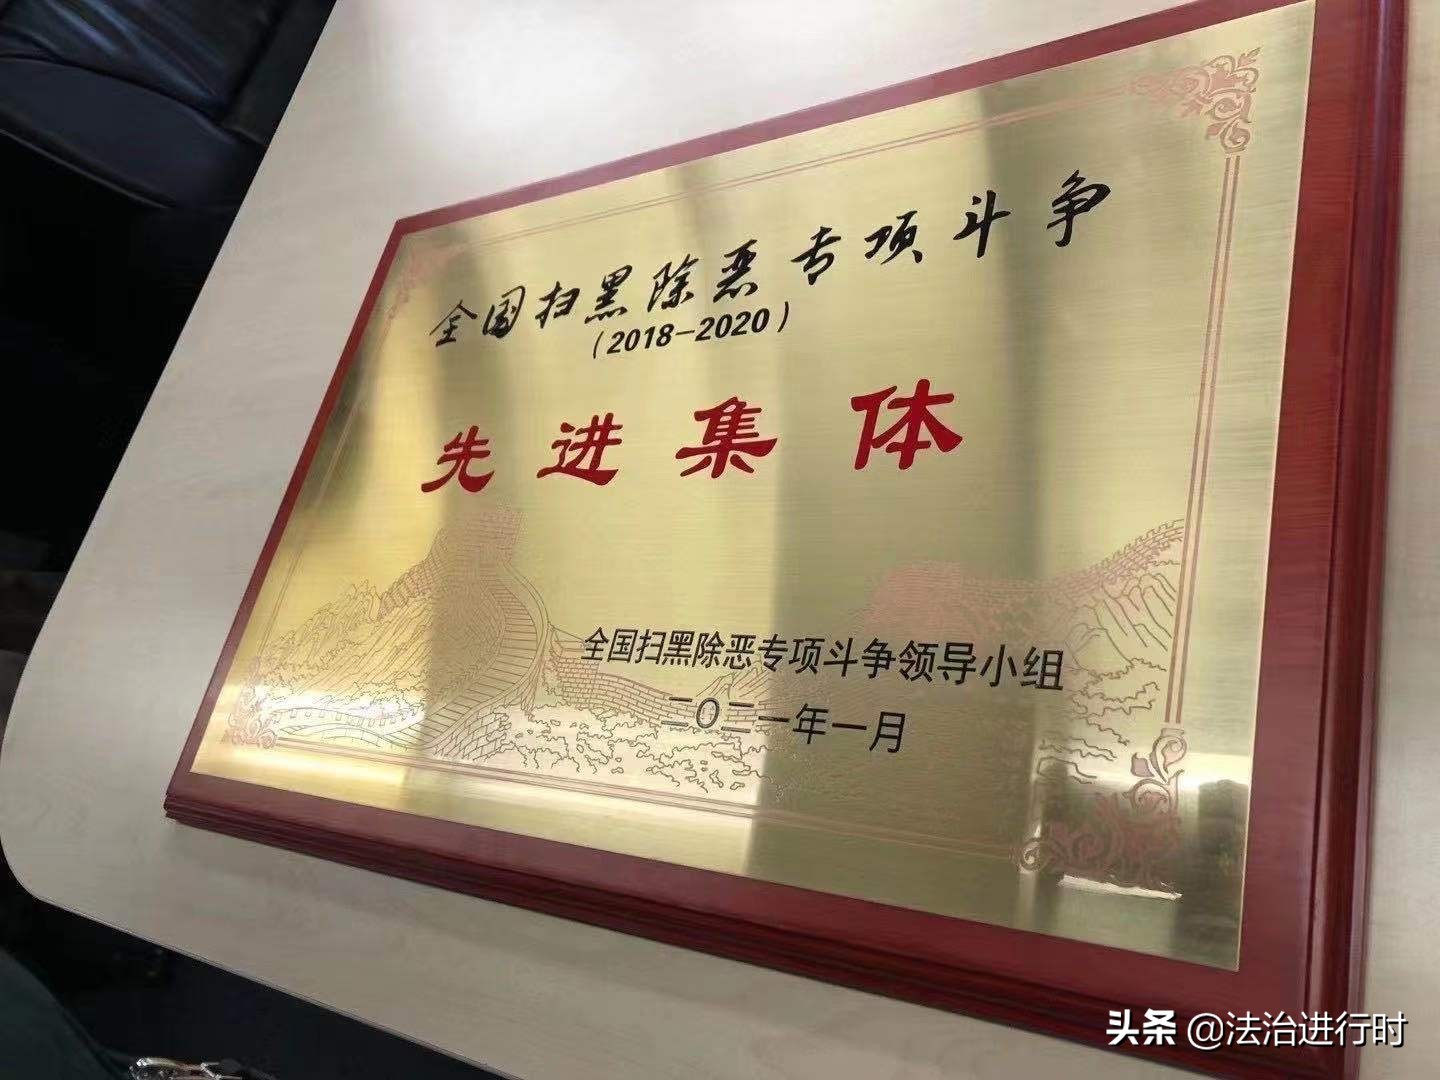 重磅！北京电视台科教频道中心荣获“全国扫黑除恶专项斗争先进集体”称号